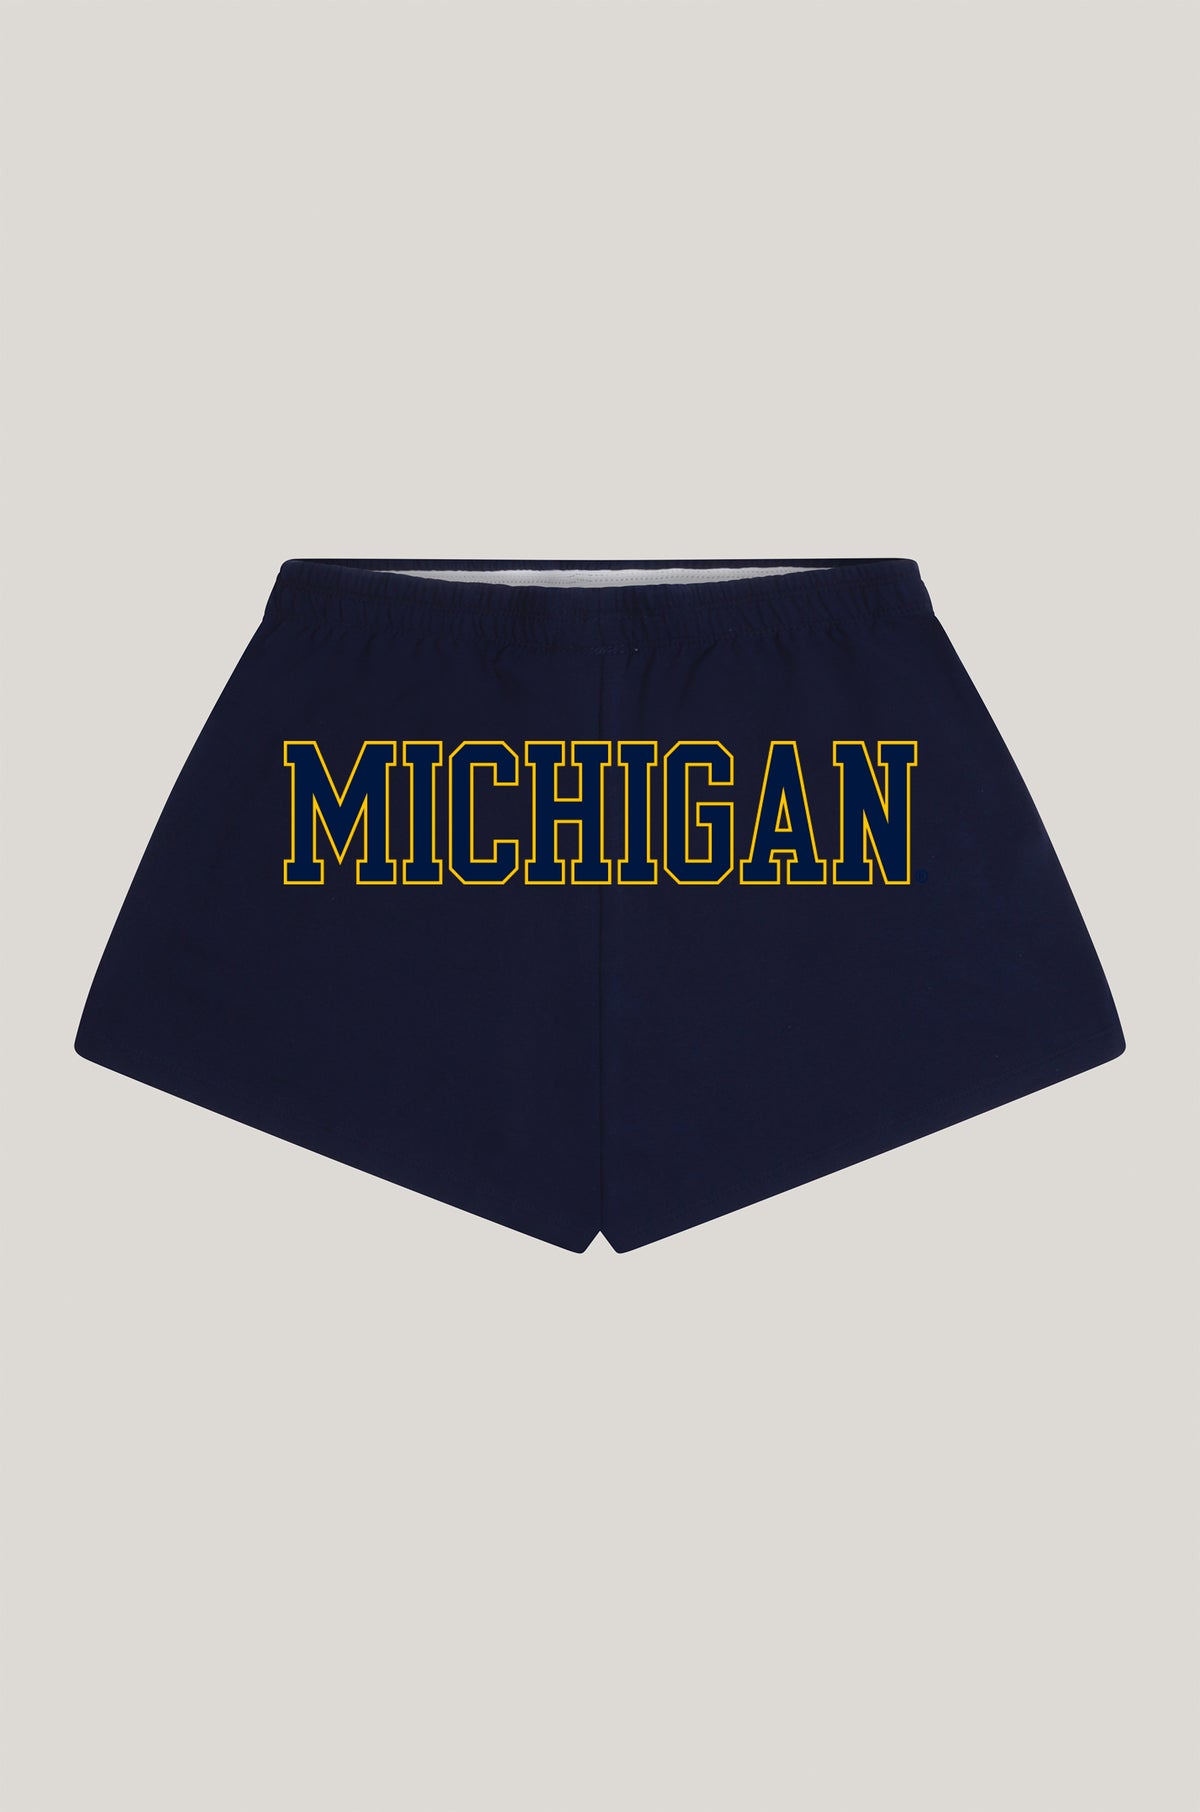 University of Michigan P.E. Shorts